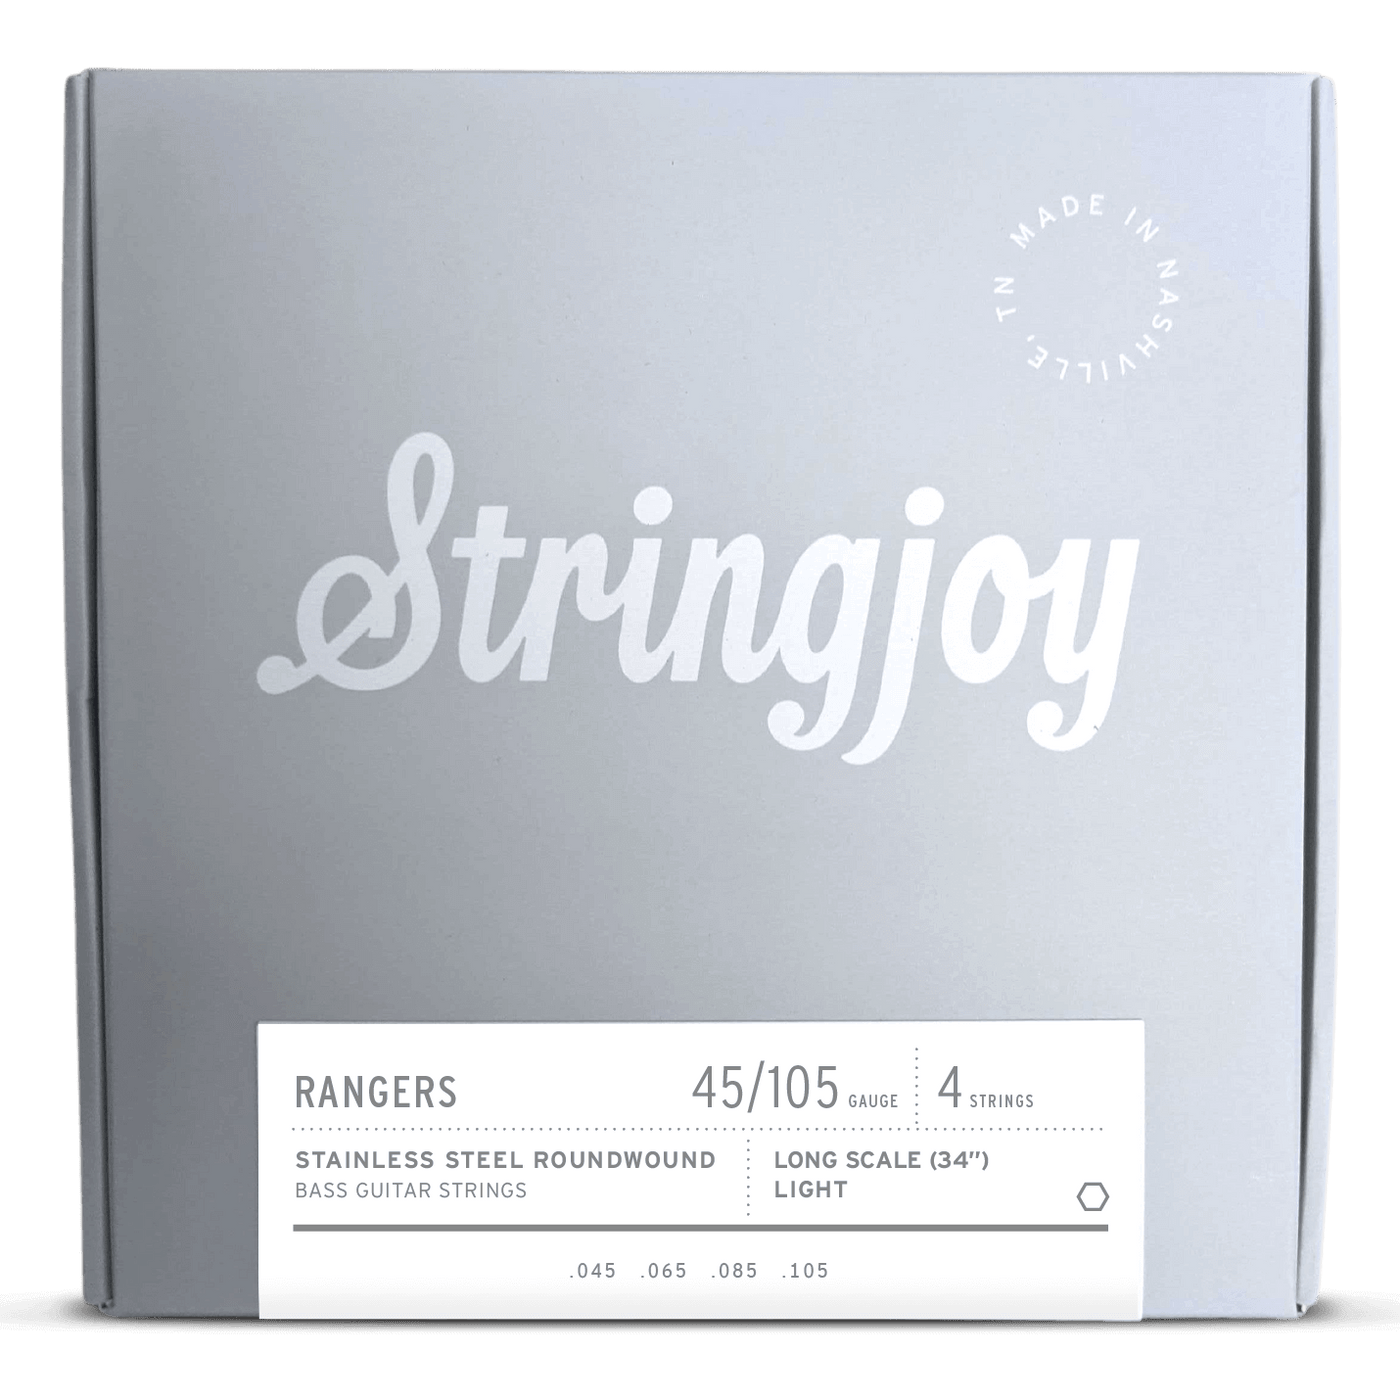 Stringjoy Long Scale Rangers Light Gauge 4 (45-105) Cuerdas de Bajo Eléctrico Acero Inoxidable